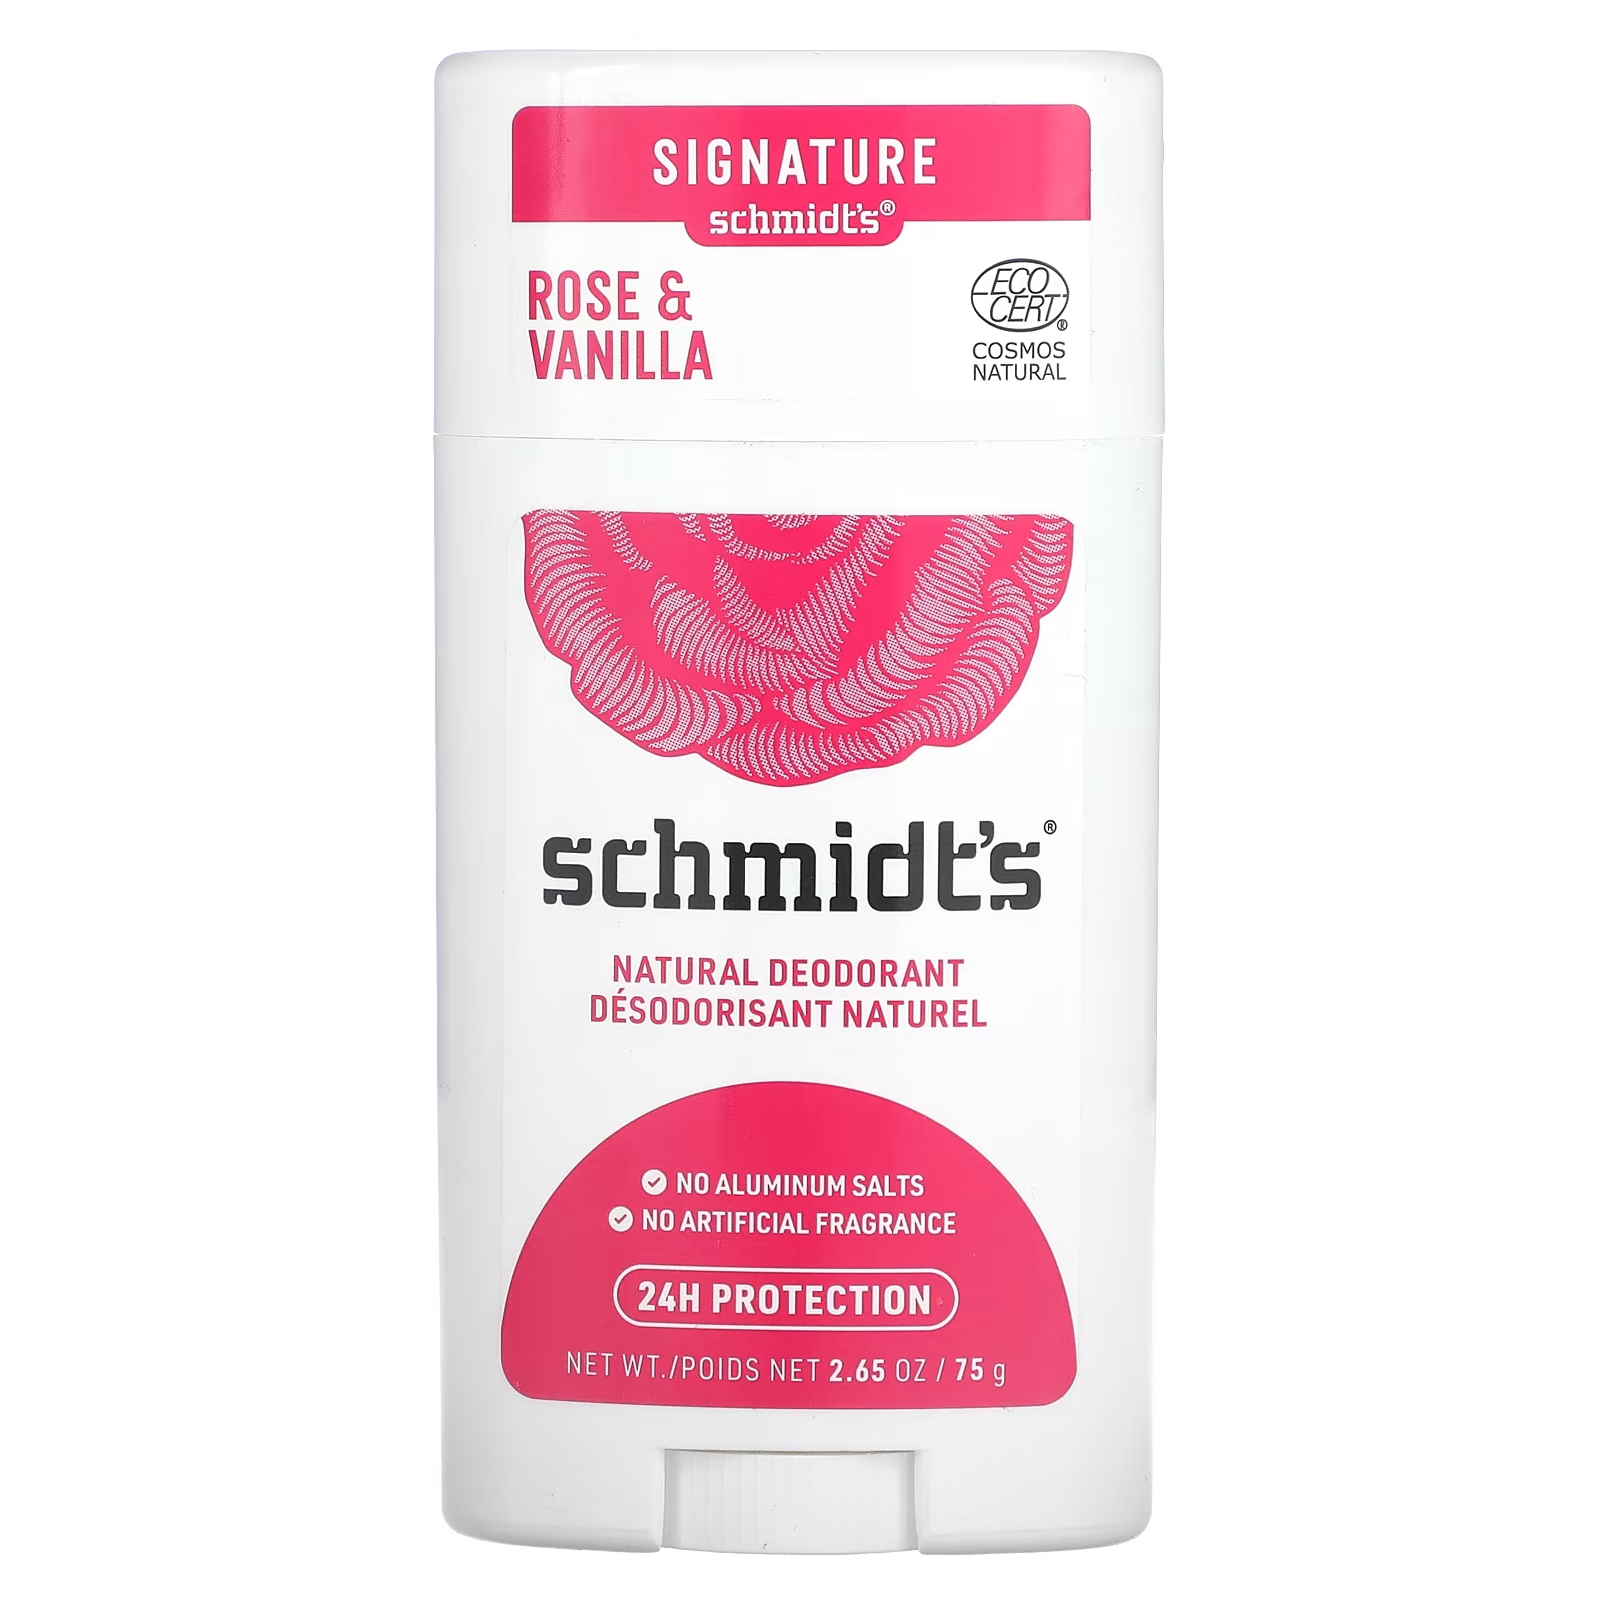 Натуральный дезодорант Schmidt's «Роза и ваниль», 2,65 унции (75 г) натуральный дезодорант schmidt s роза и ваниль 2 65 унции 75 г